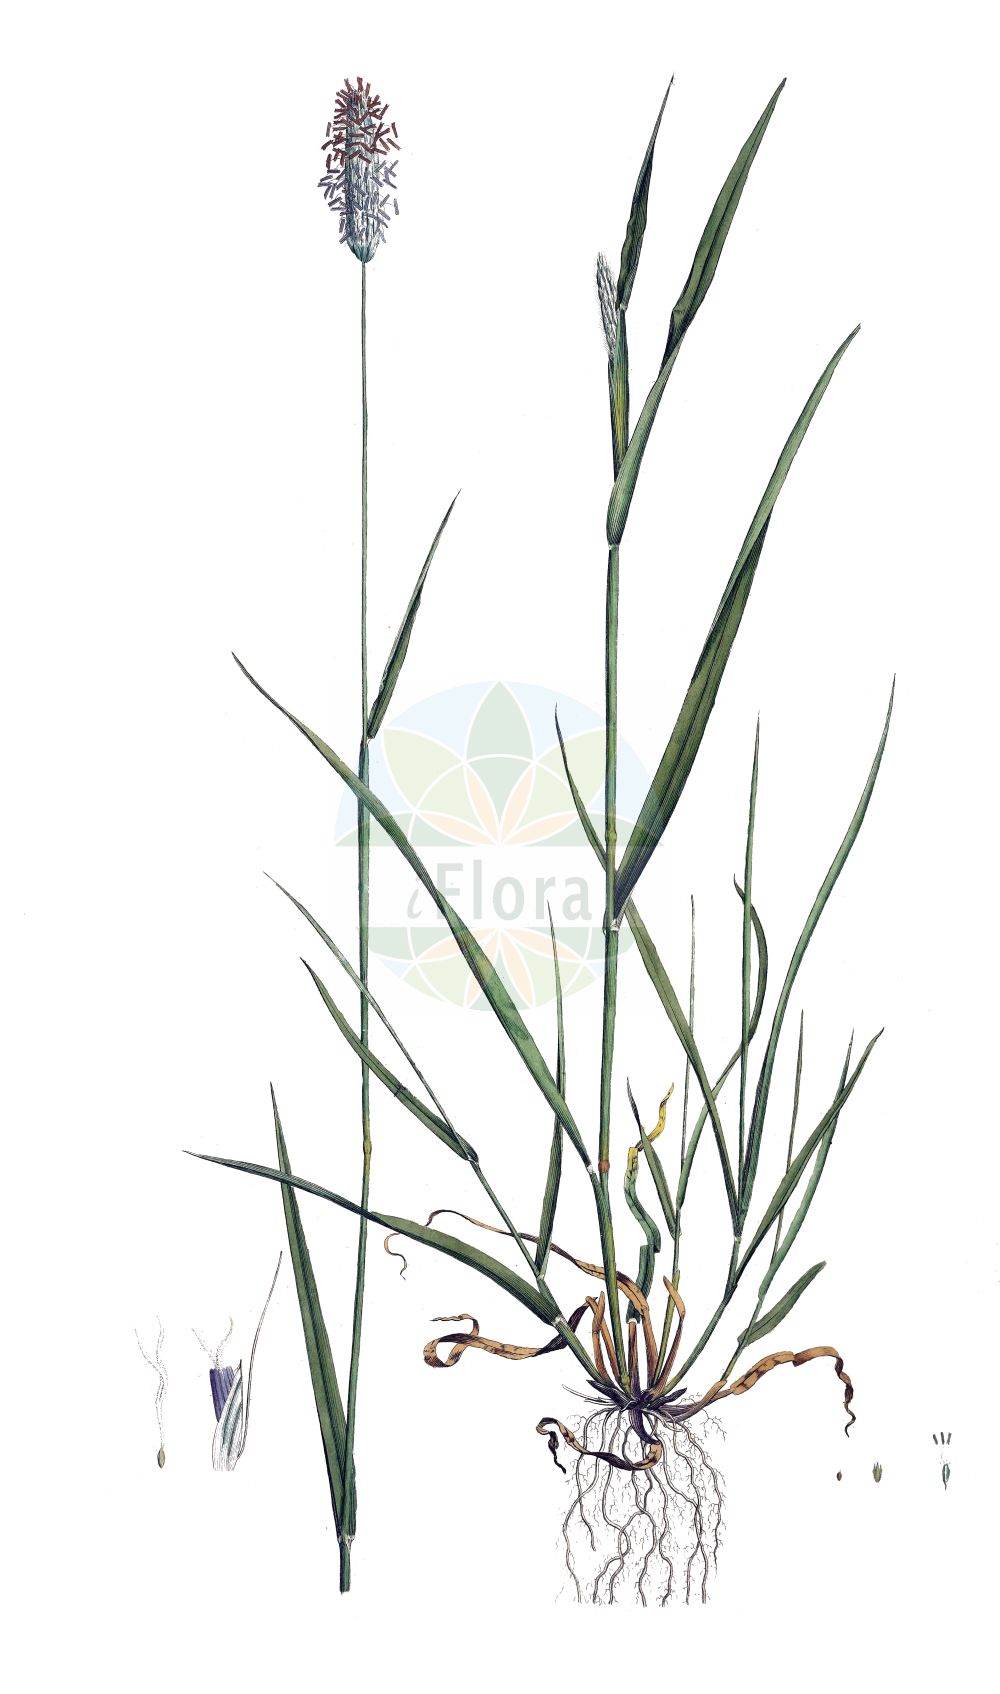 Historische Abbildung von Alopecurus pratensis (Wiesen-Fuchsschwanzgras - Meadow Foxtail). Das Bild zeigt Blatt, Bluete, Frucht und Same. ---- Historical Drawing of Alopecurus pratensis (Wiesen-Fuchsschwanzgras - Meadow Foxtail). The image is showing leaf, flower, fruit and seed.(Alopecurus pratensis,Wiesen-Fuchsschwanzgras,Meadow Foxtail,Alopecurus pratensis,Wiesen-Fuchsschwanzgras,Meadow Foxtail,Common Foxtail Grass,Rendle's Meadow Foxtail,Alopecurus,Fuchsschwanzgras,Foxtail,Poaceae,Süßgräser,Grass family,Blatt,Bluete,Frucht,Same,leaf,flower,fruit,seed,Curtis (1777-1798))